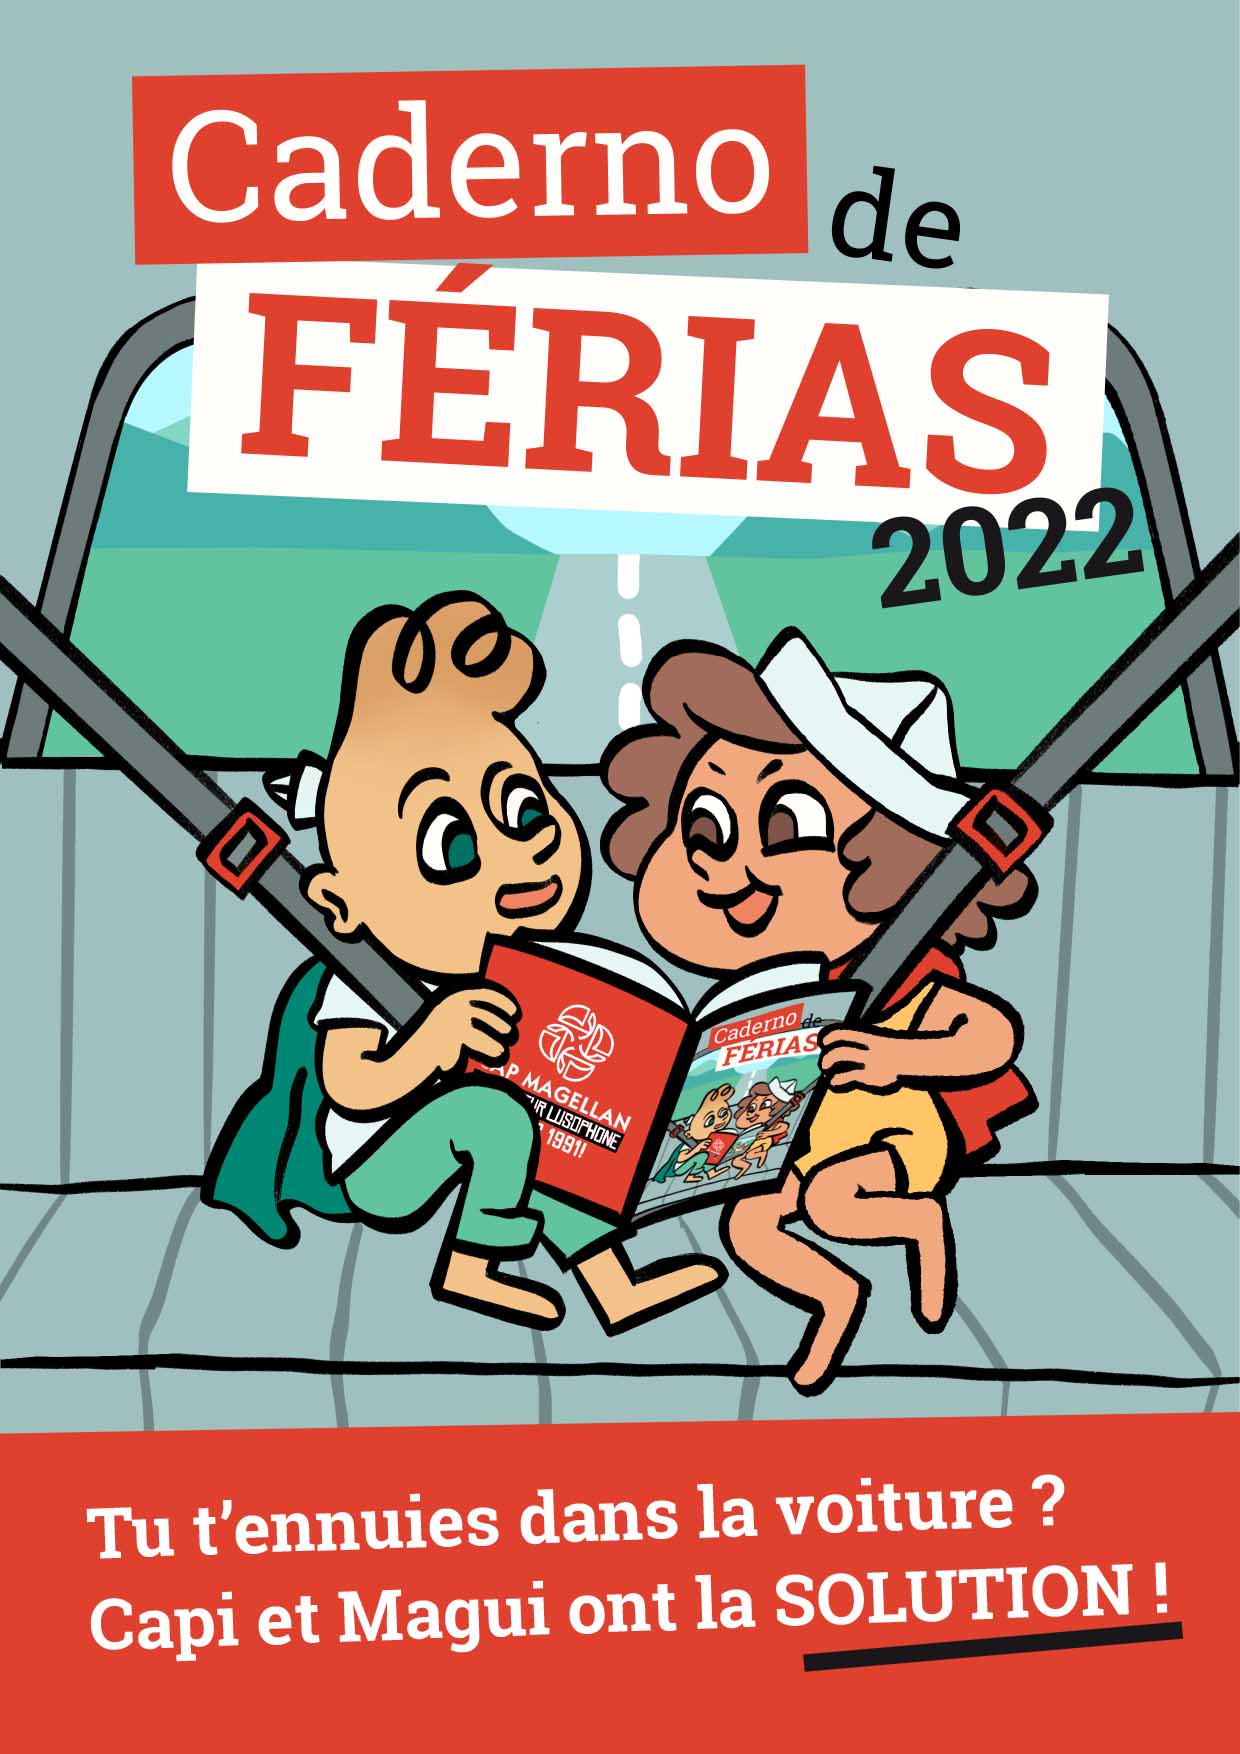 CADERNO DE FERIAS 2022-Carnet de vacances